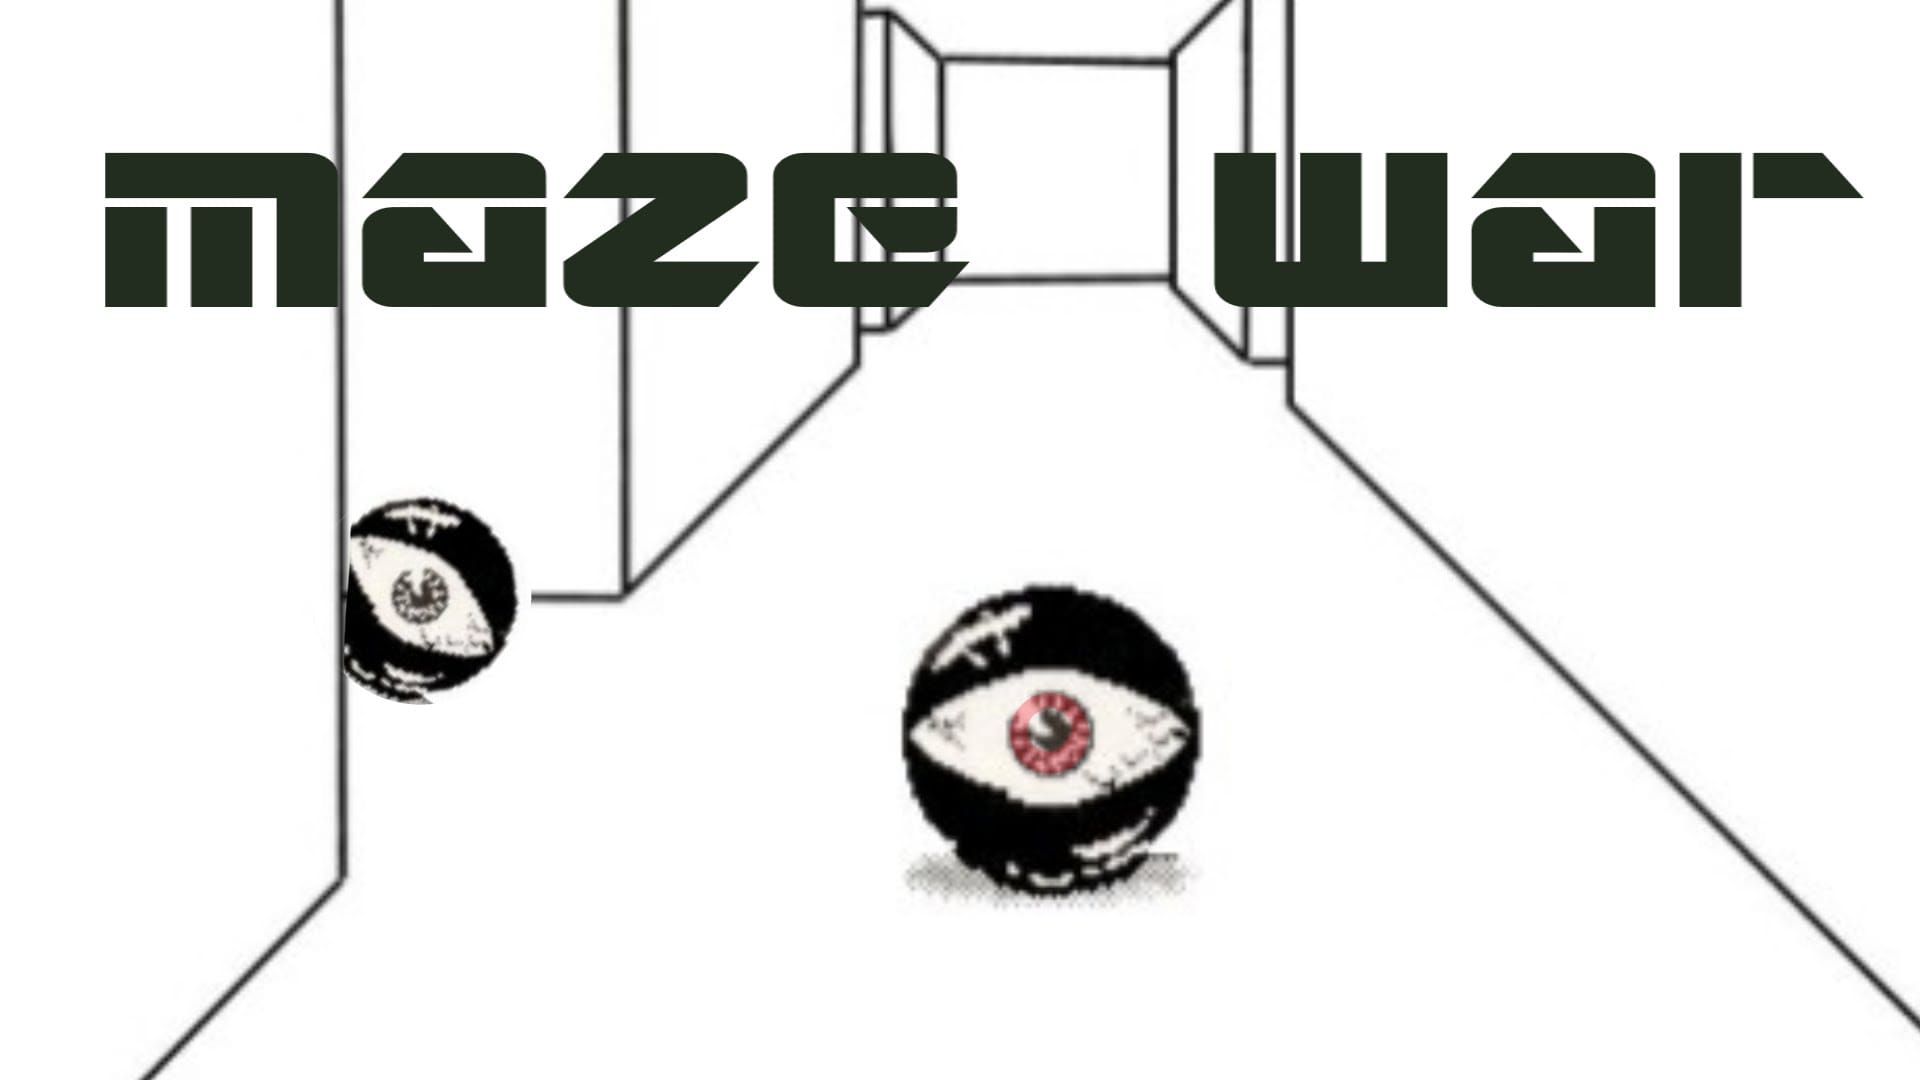 Maze War